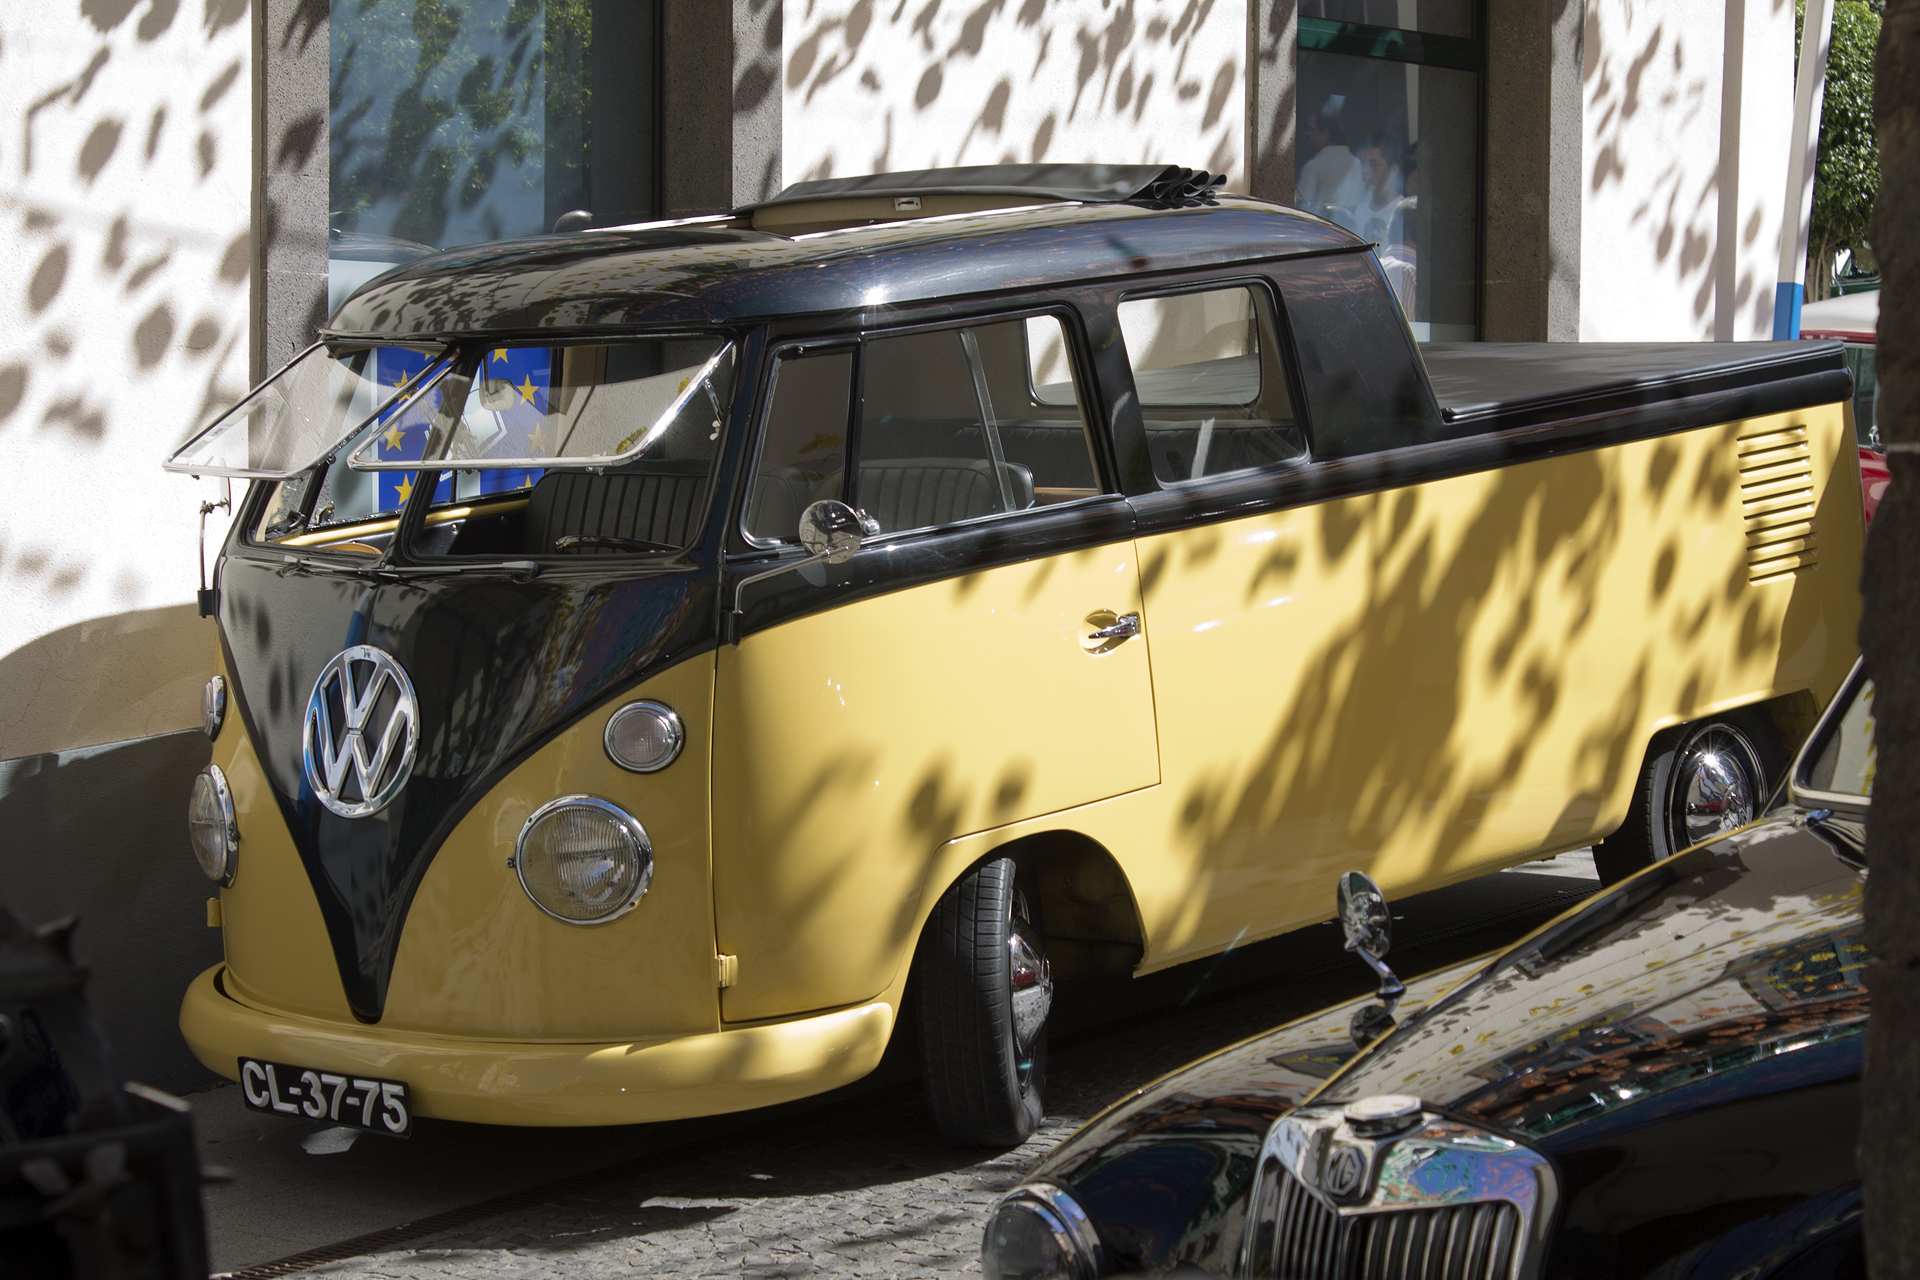 Volkswagen Type 2 Pickup - Classicos do Sol 2012 | Flickr - Photo ...